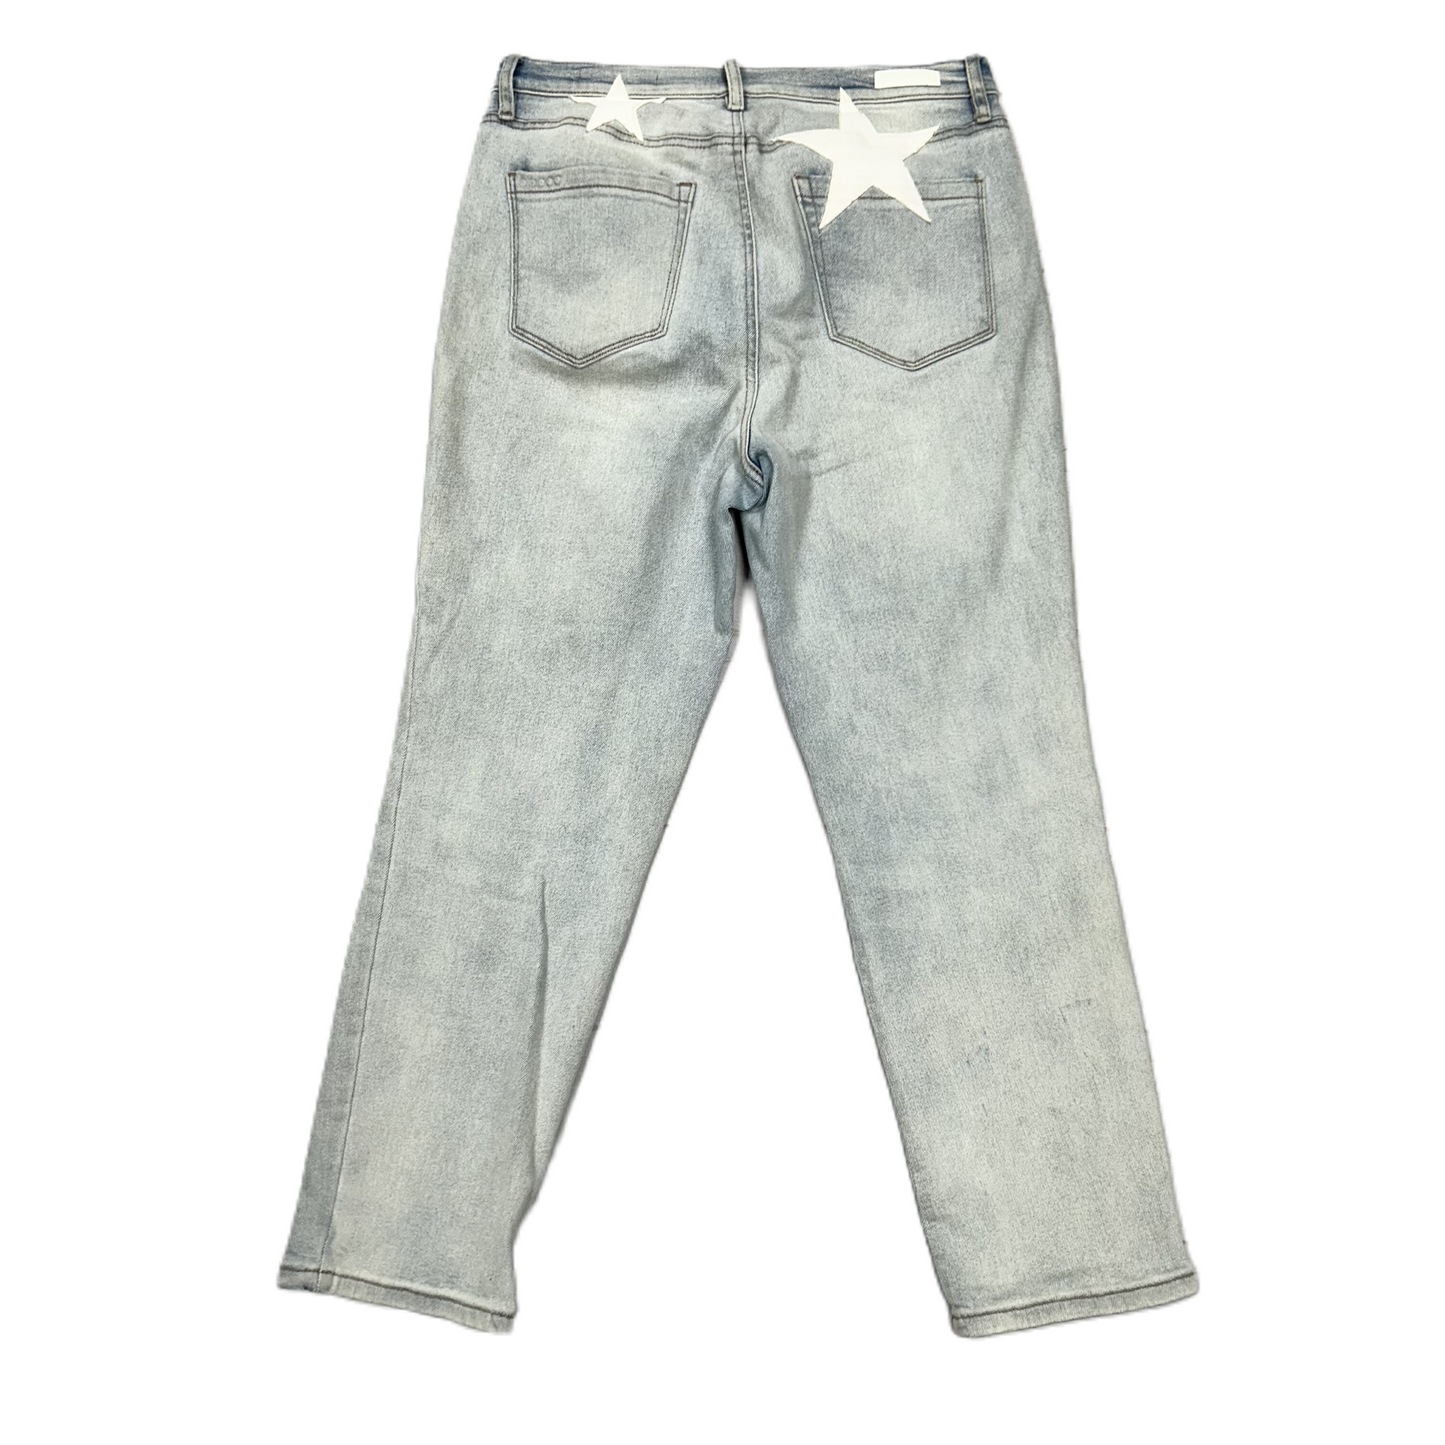 Blue Denim Jeans Cropped By Blanknyc, Size: 8